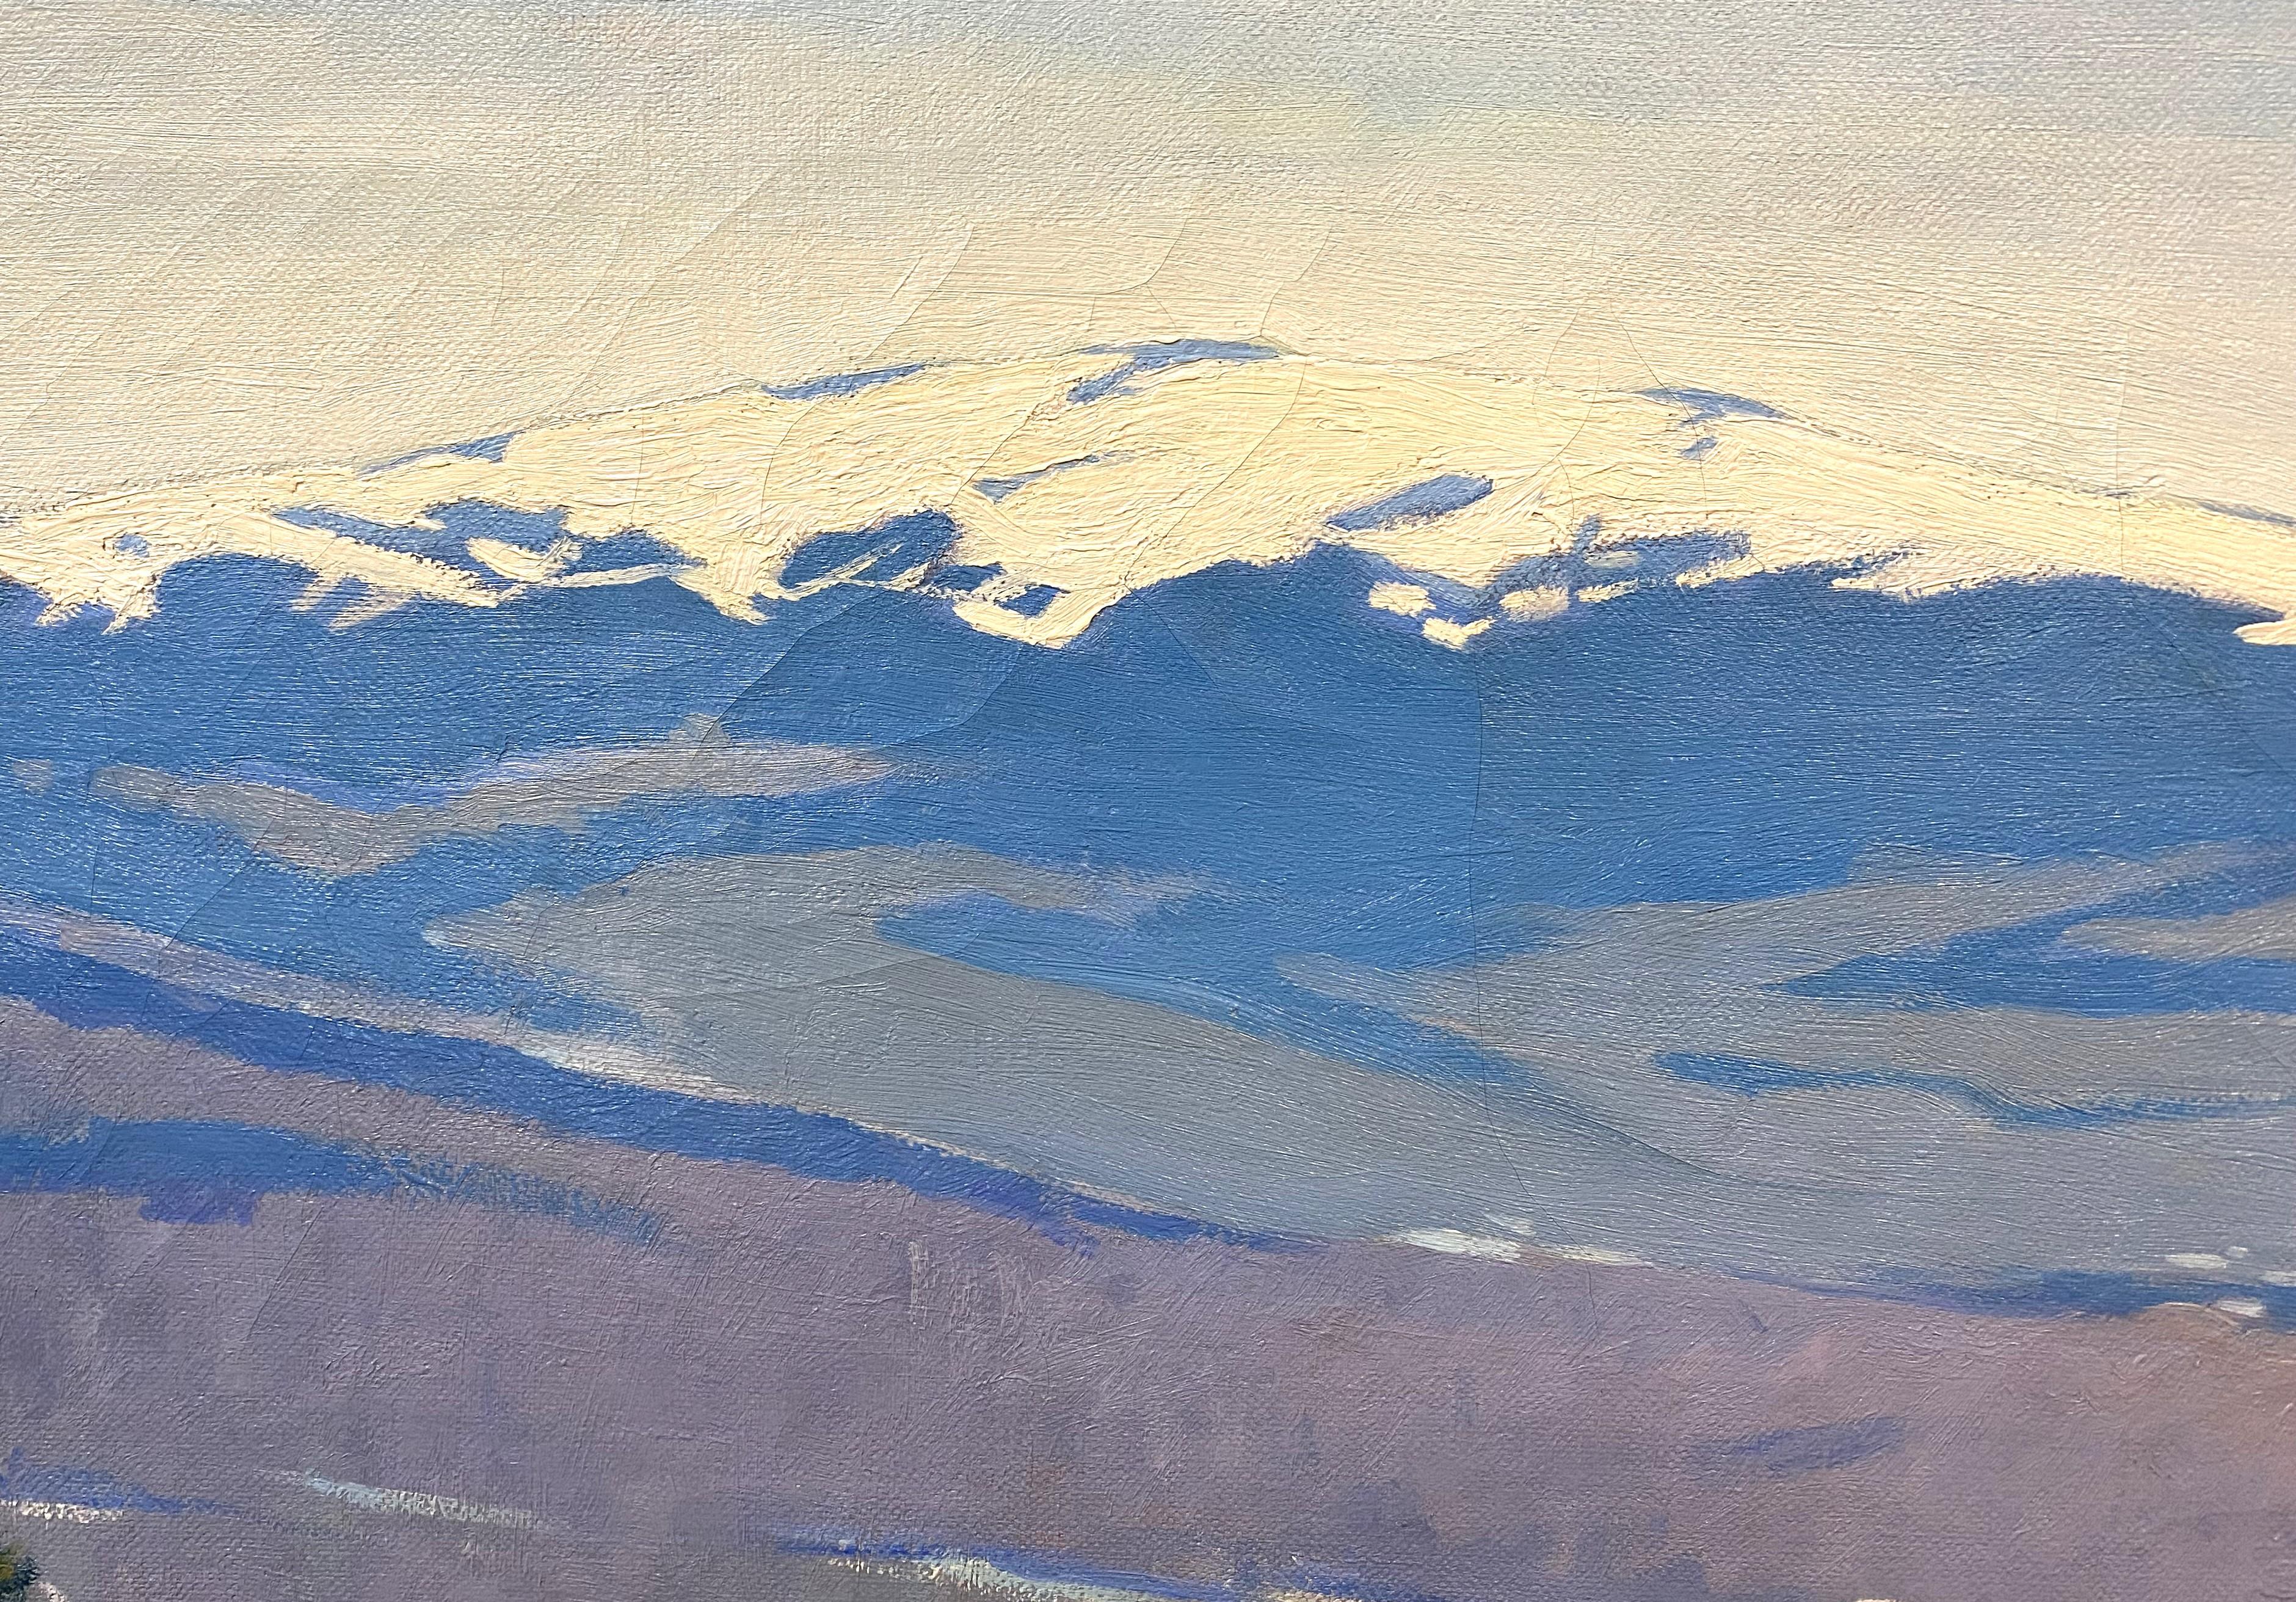 Eine schöne Winterlandschaft des Mount Monadnock in New Hampshire von dem amerikanischen Künstler Alexander Robertson James (1890-1946). James, Neffe des Schriftstellers Henry James, wurde in Cambridge, MA, geboren, studierte Malerei, während er